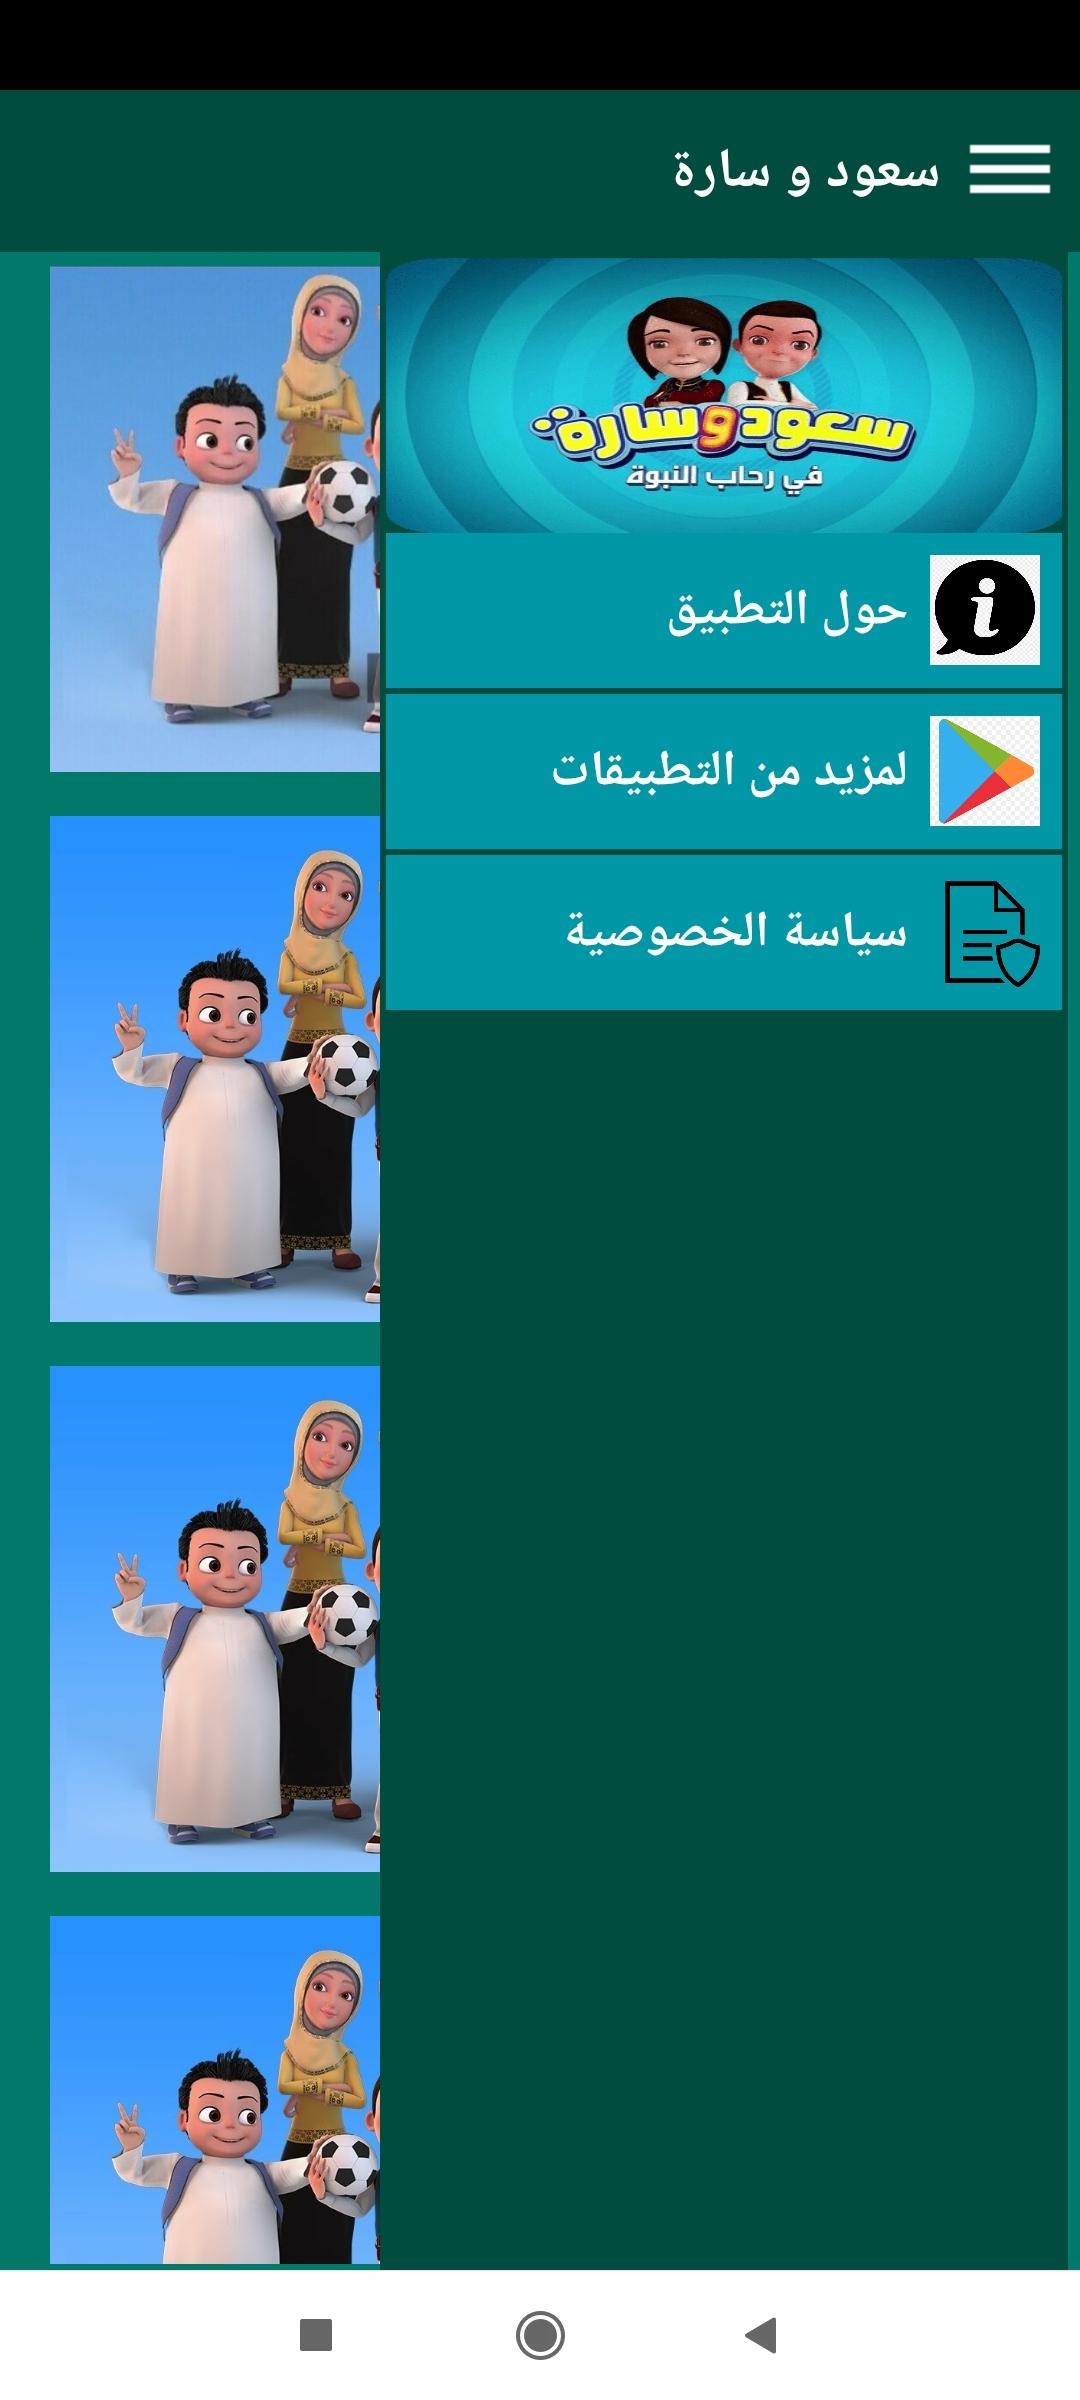 سعود وسارة في روضة القرآن for Android - APK Download